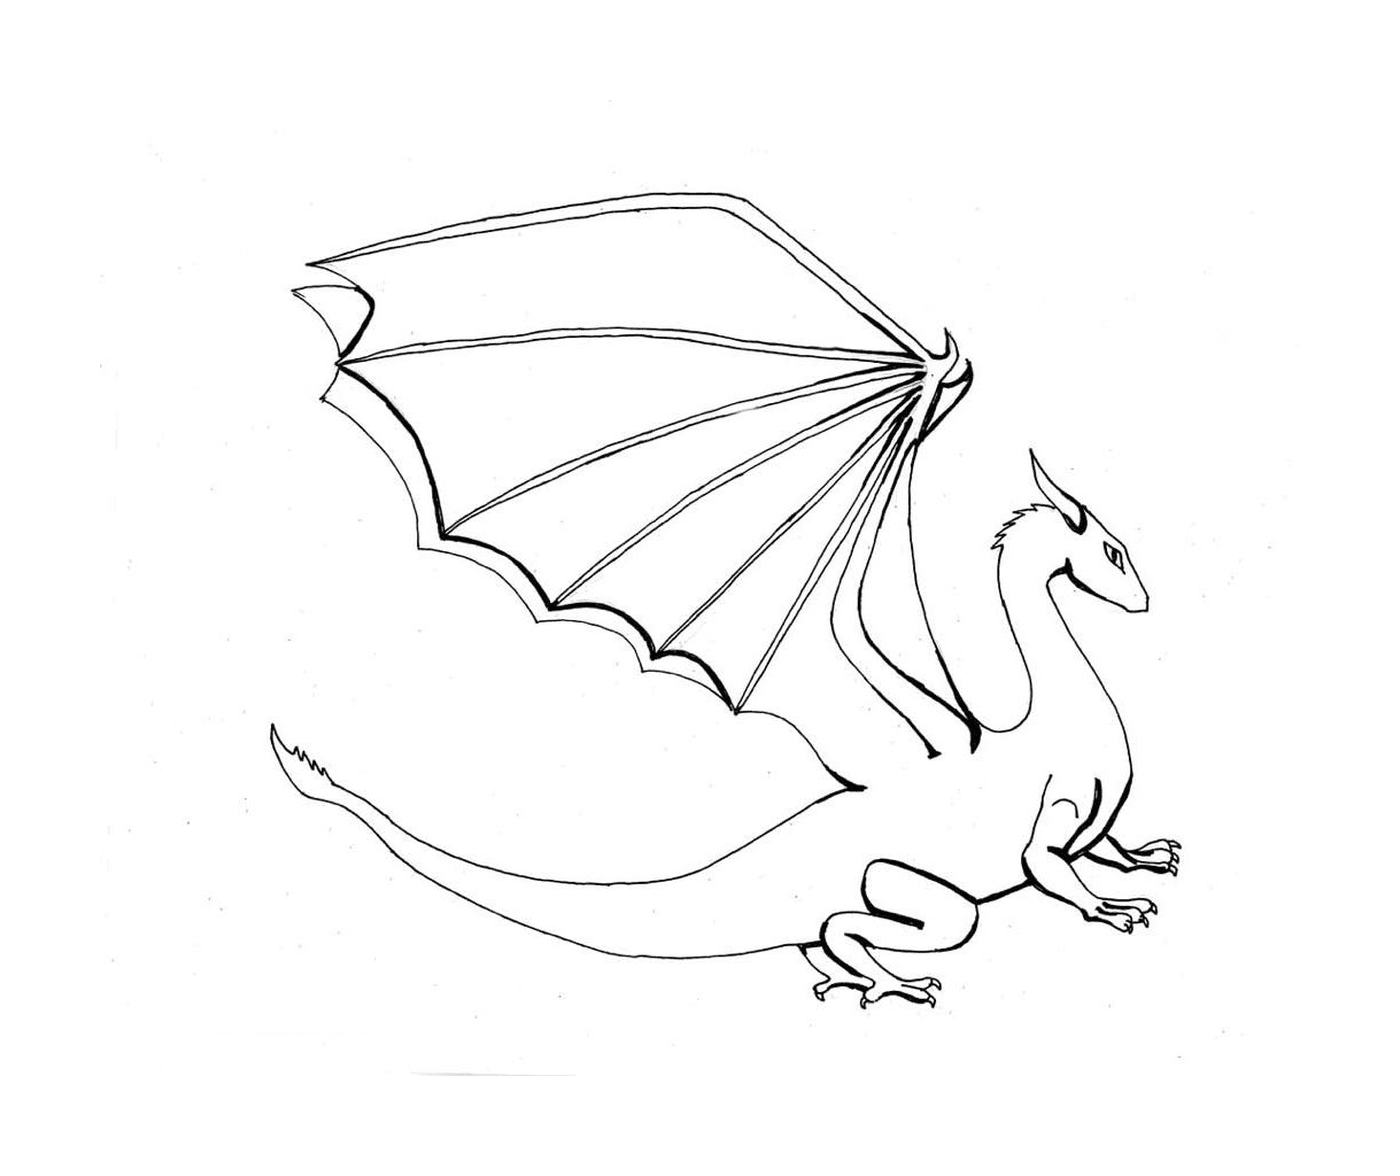  Un drago bianco con una lunga coda 